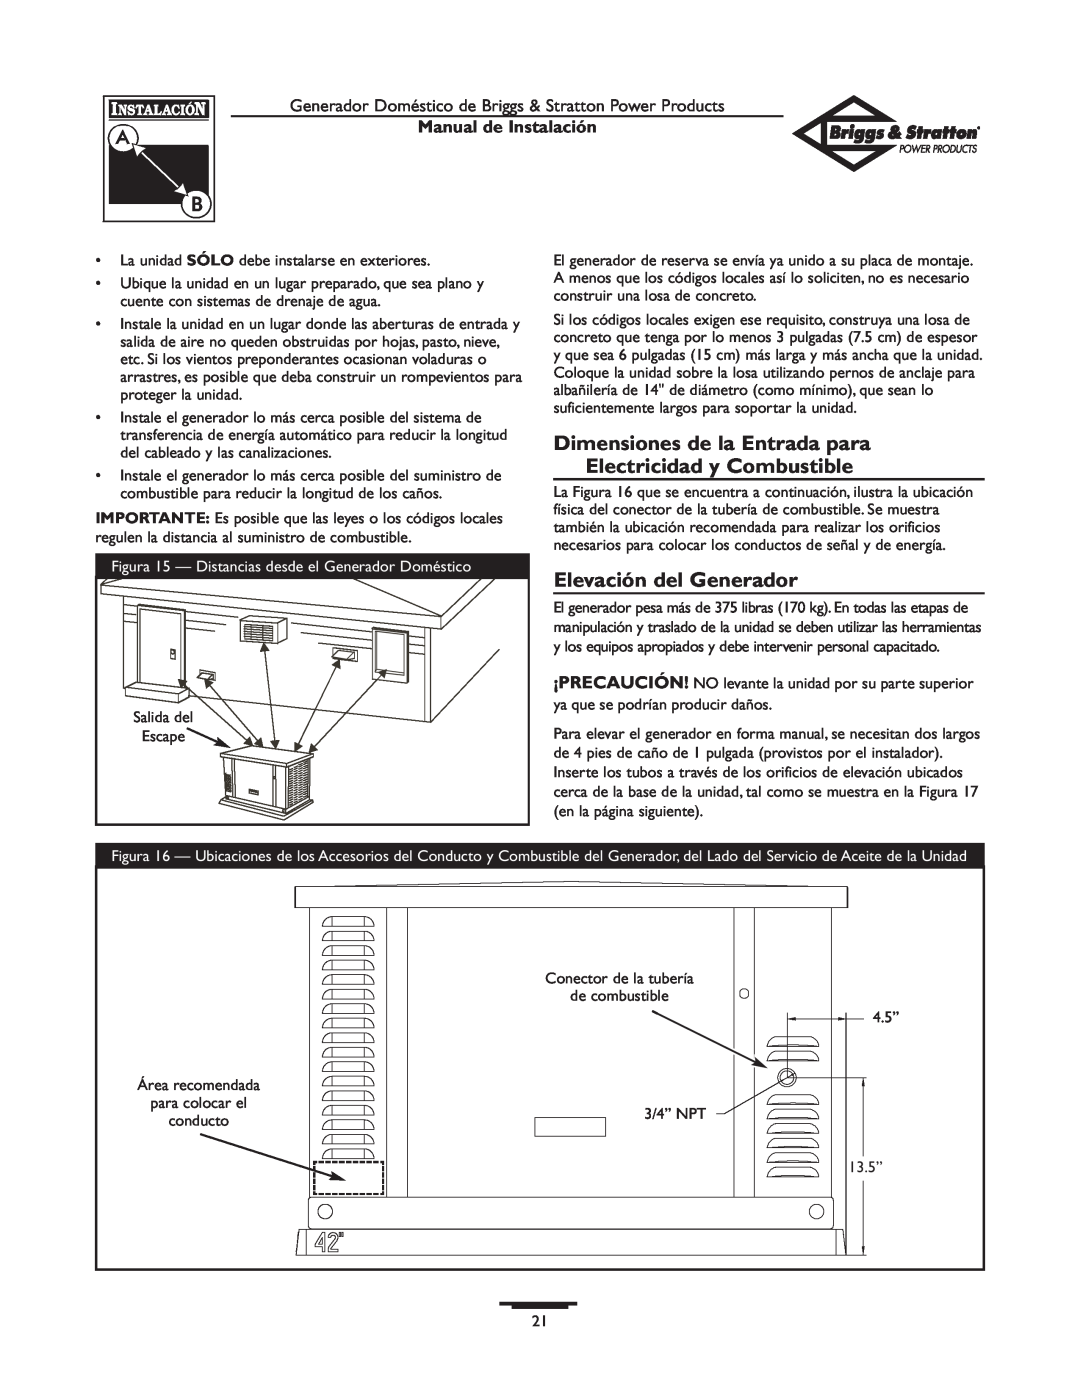 Briggs & Stratton 01938-0 manual Dimensiones de la Entrada para, Electricidad y Combustible, Elevación del Generador 